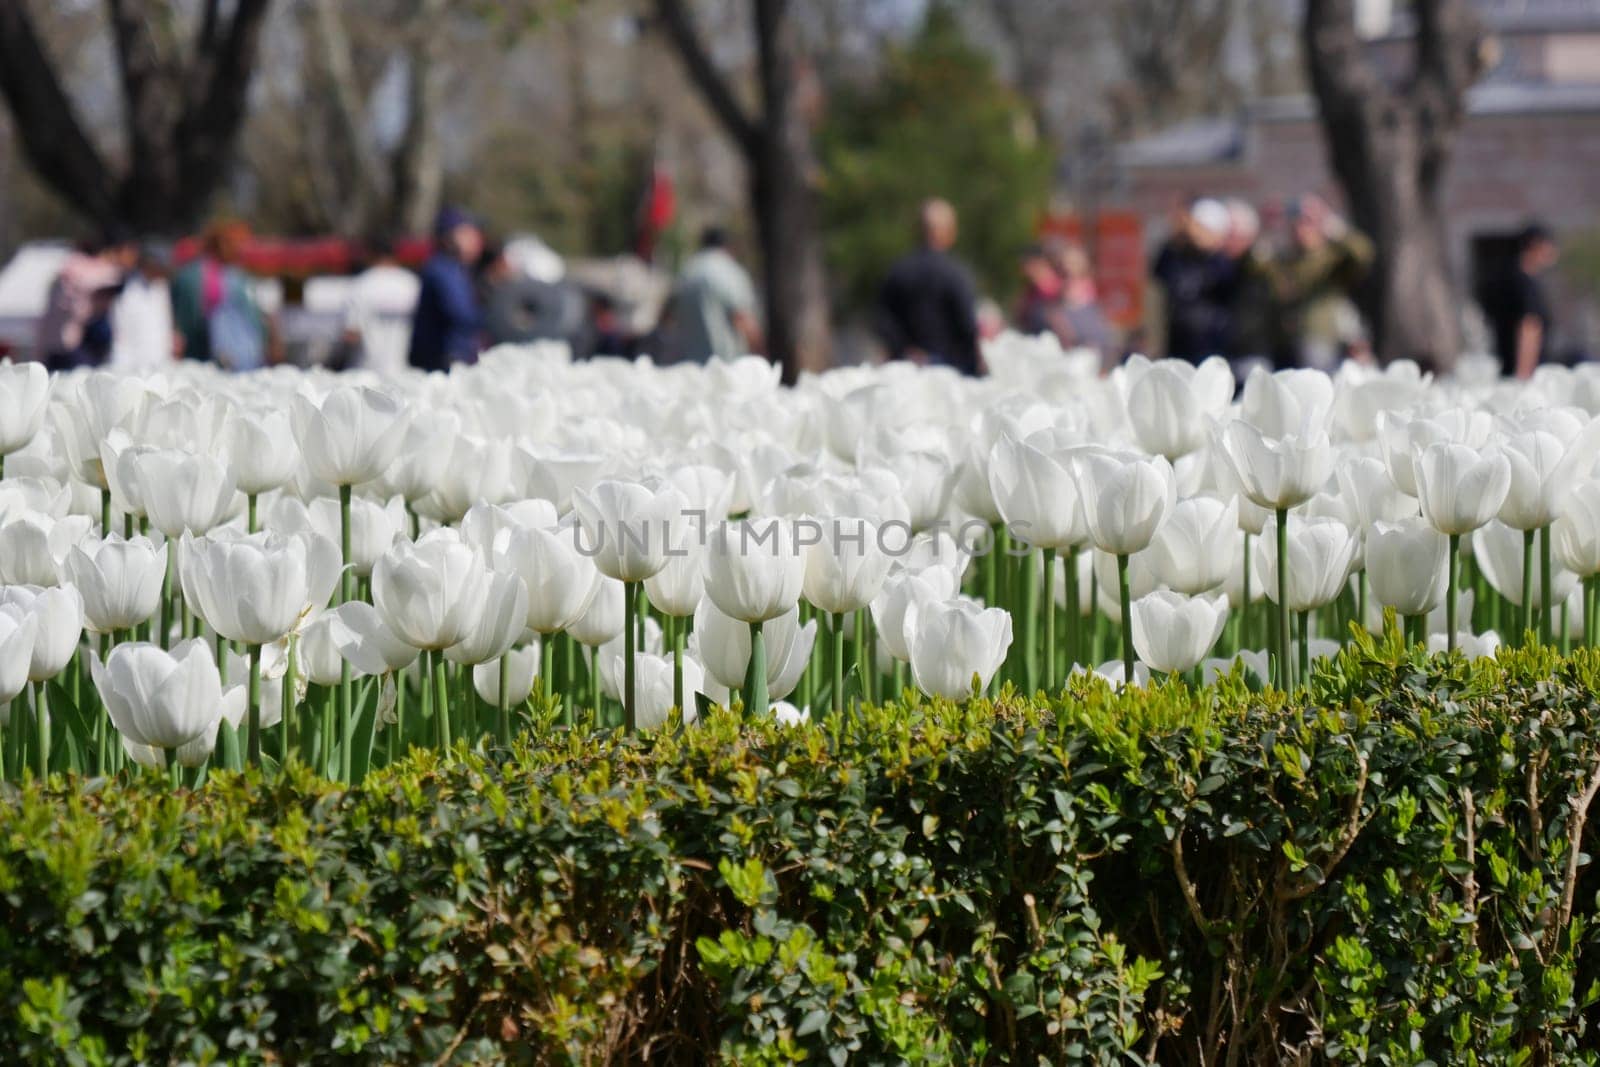 white tulips in a garden at popular tourist destination .